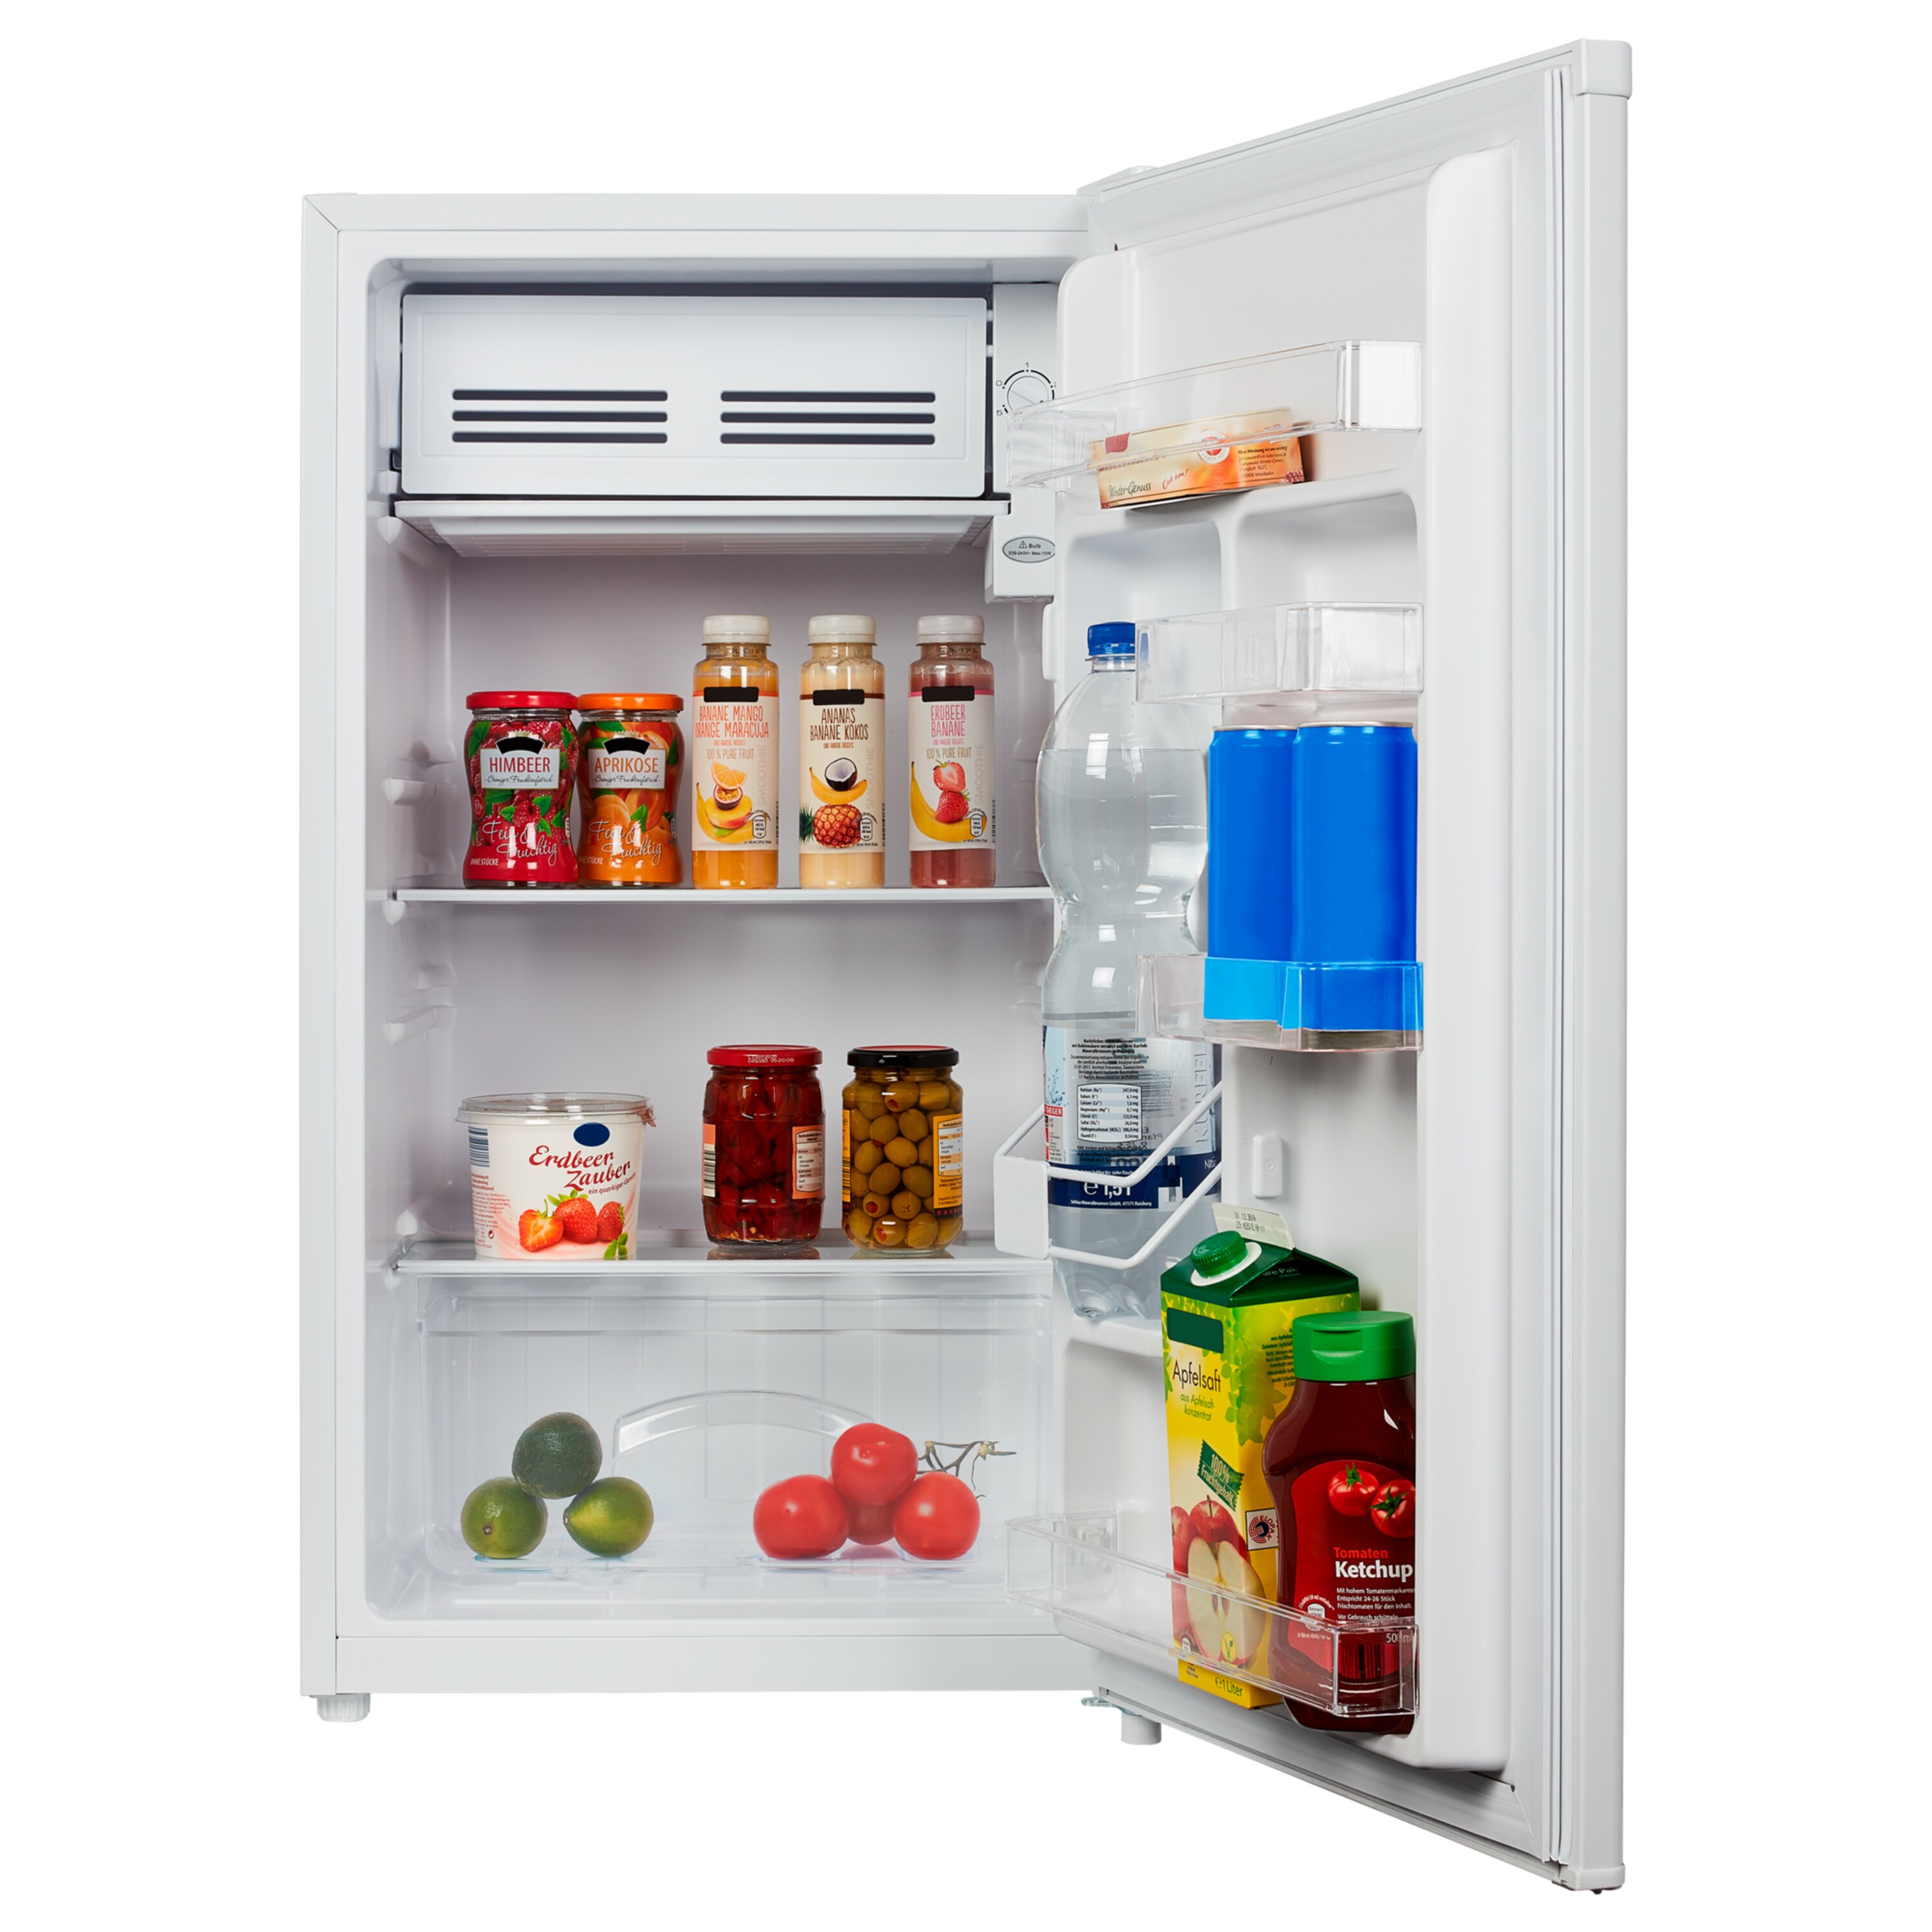 MEDION® Kühlschrank mit Eiswürfelfach MD 37305, 93 L Gesamt-Nutzinhalt (Kühlteil 83 L & Eiswürfelfach 10 L), wechselbarer Türanschlag, geringer Geräuschpegel